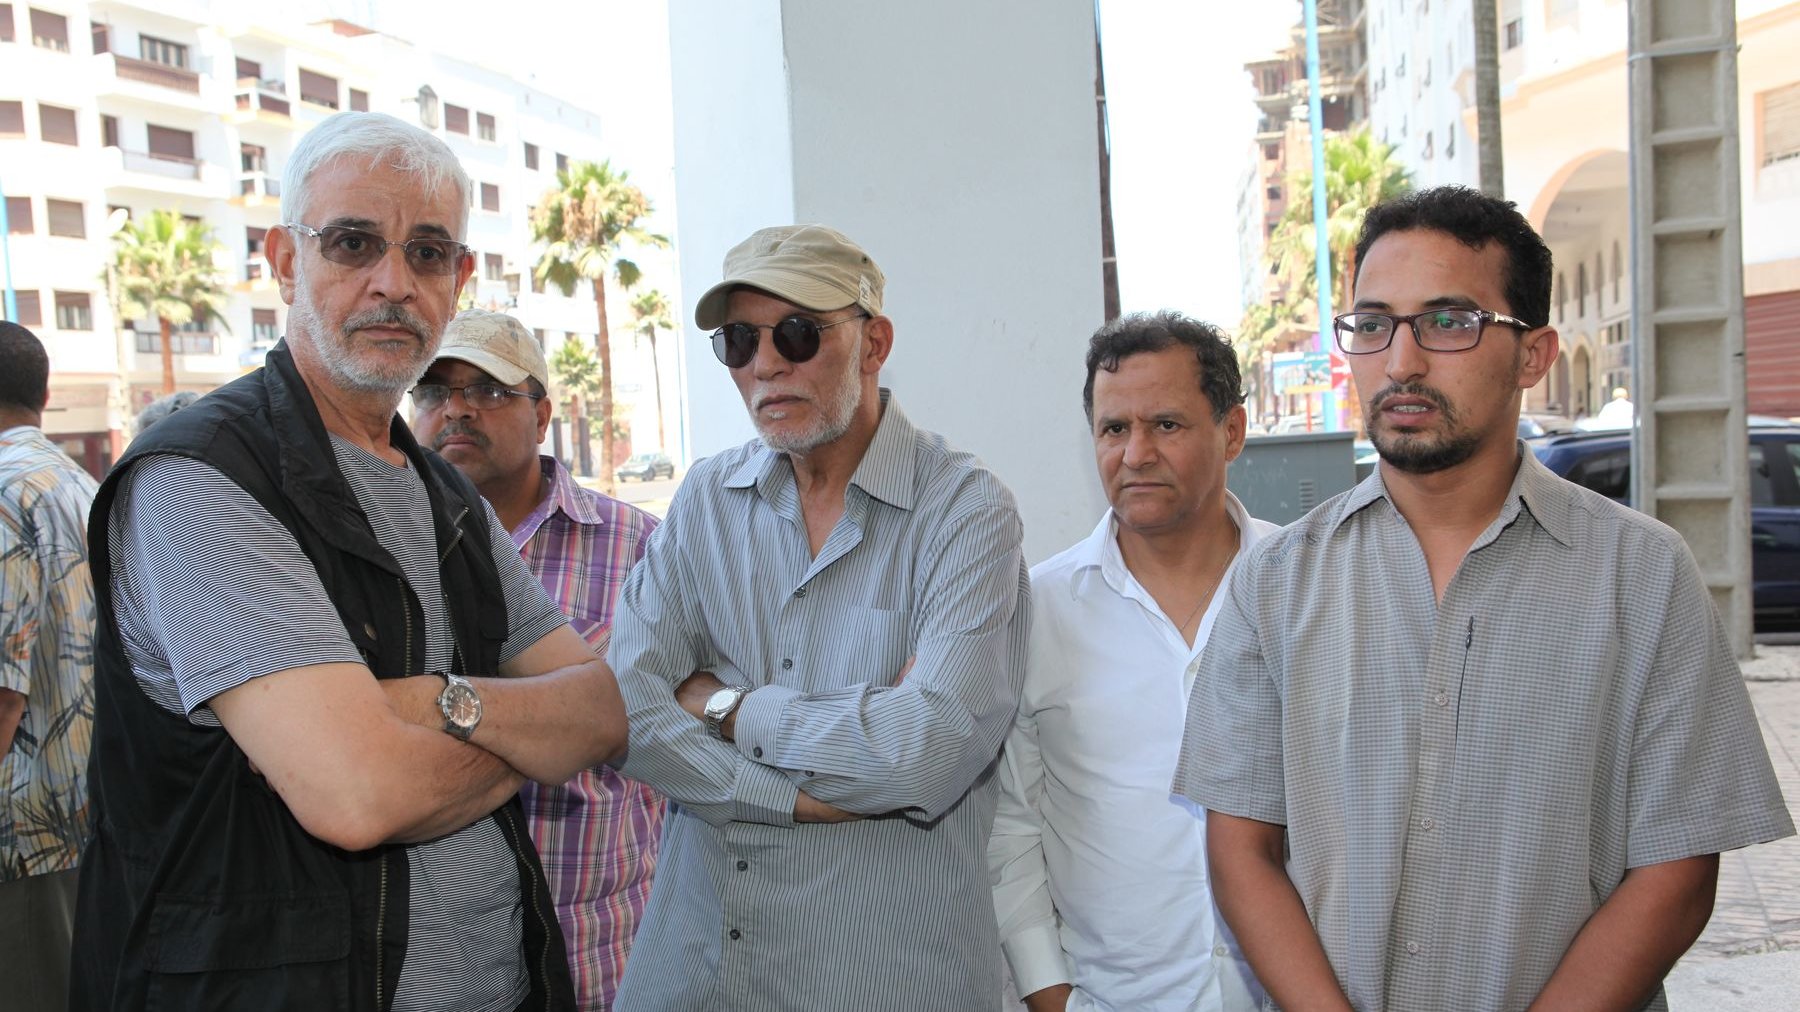 De grands noms de la scène artistique marocaine ont assisté aux funérailles de Mohamed Chabâa, tels que Abderrahmane Banane, Abdelkebir Rabii et Mehdi Qotbi
